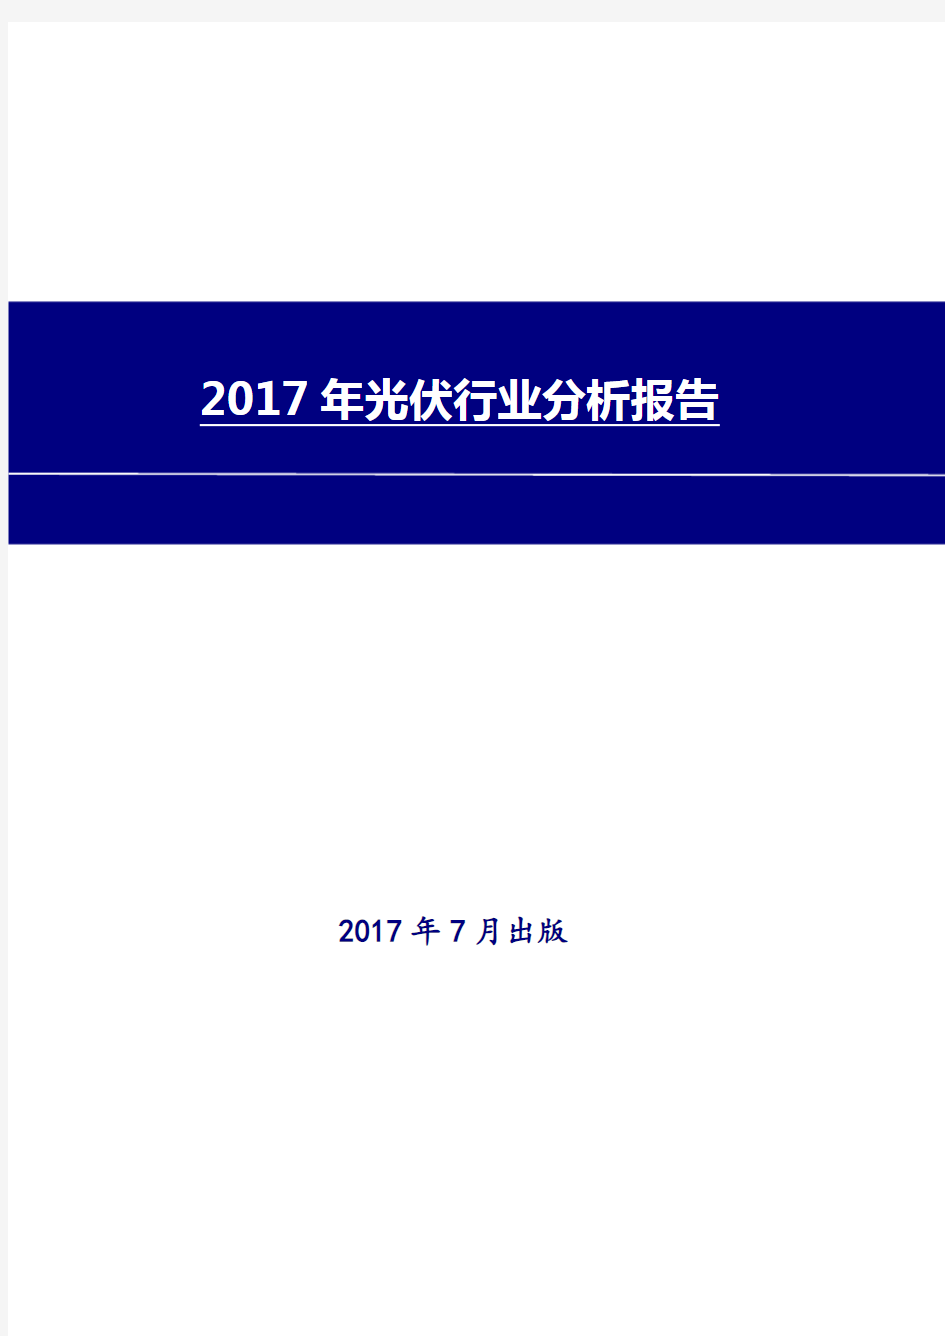 光伏行业分析报告2017-2018年版